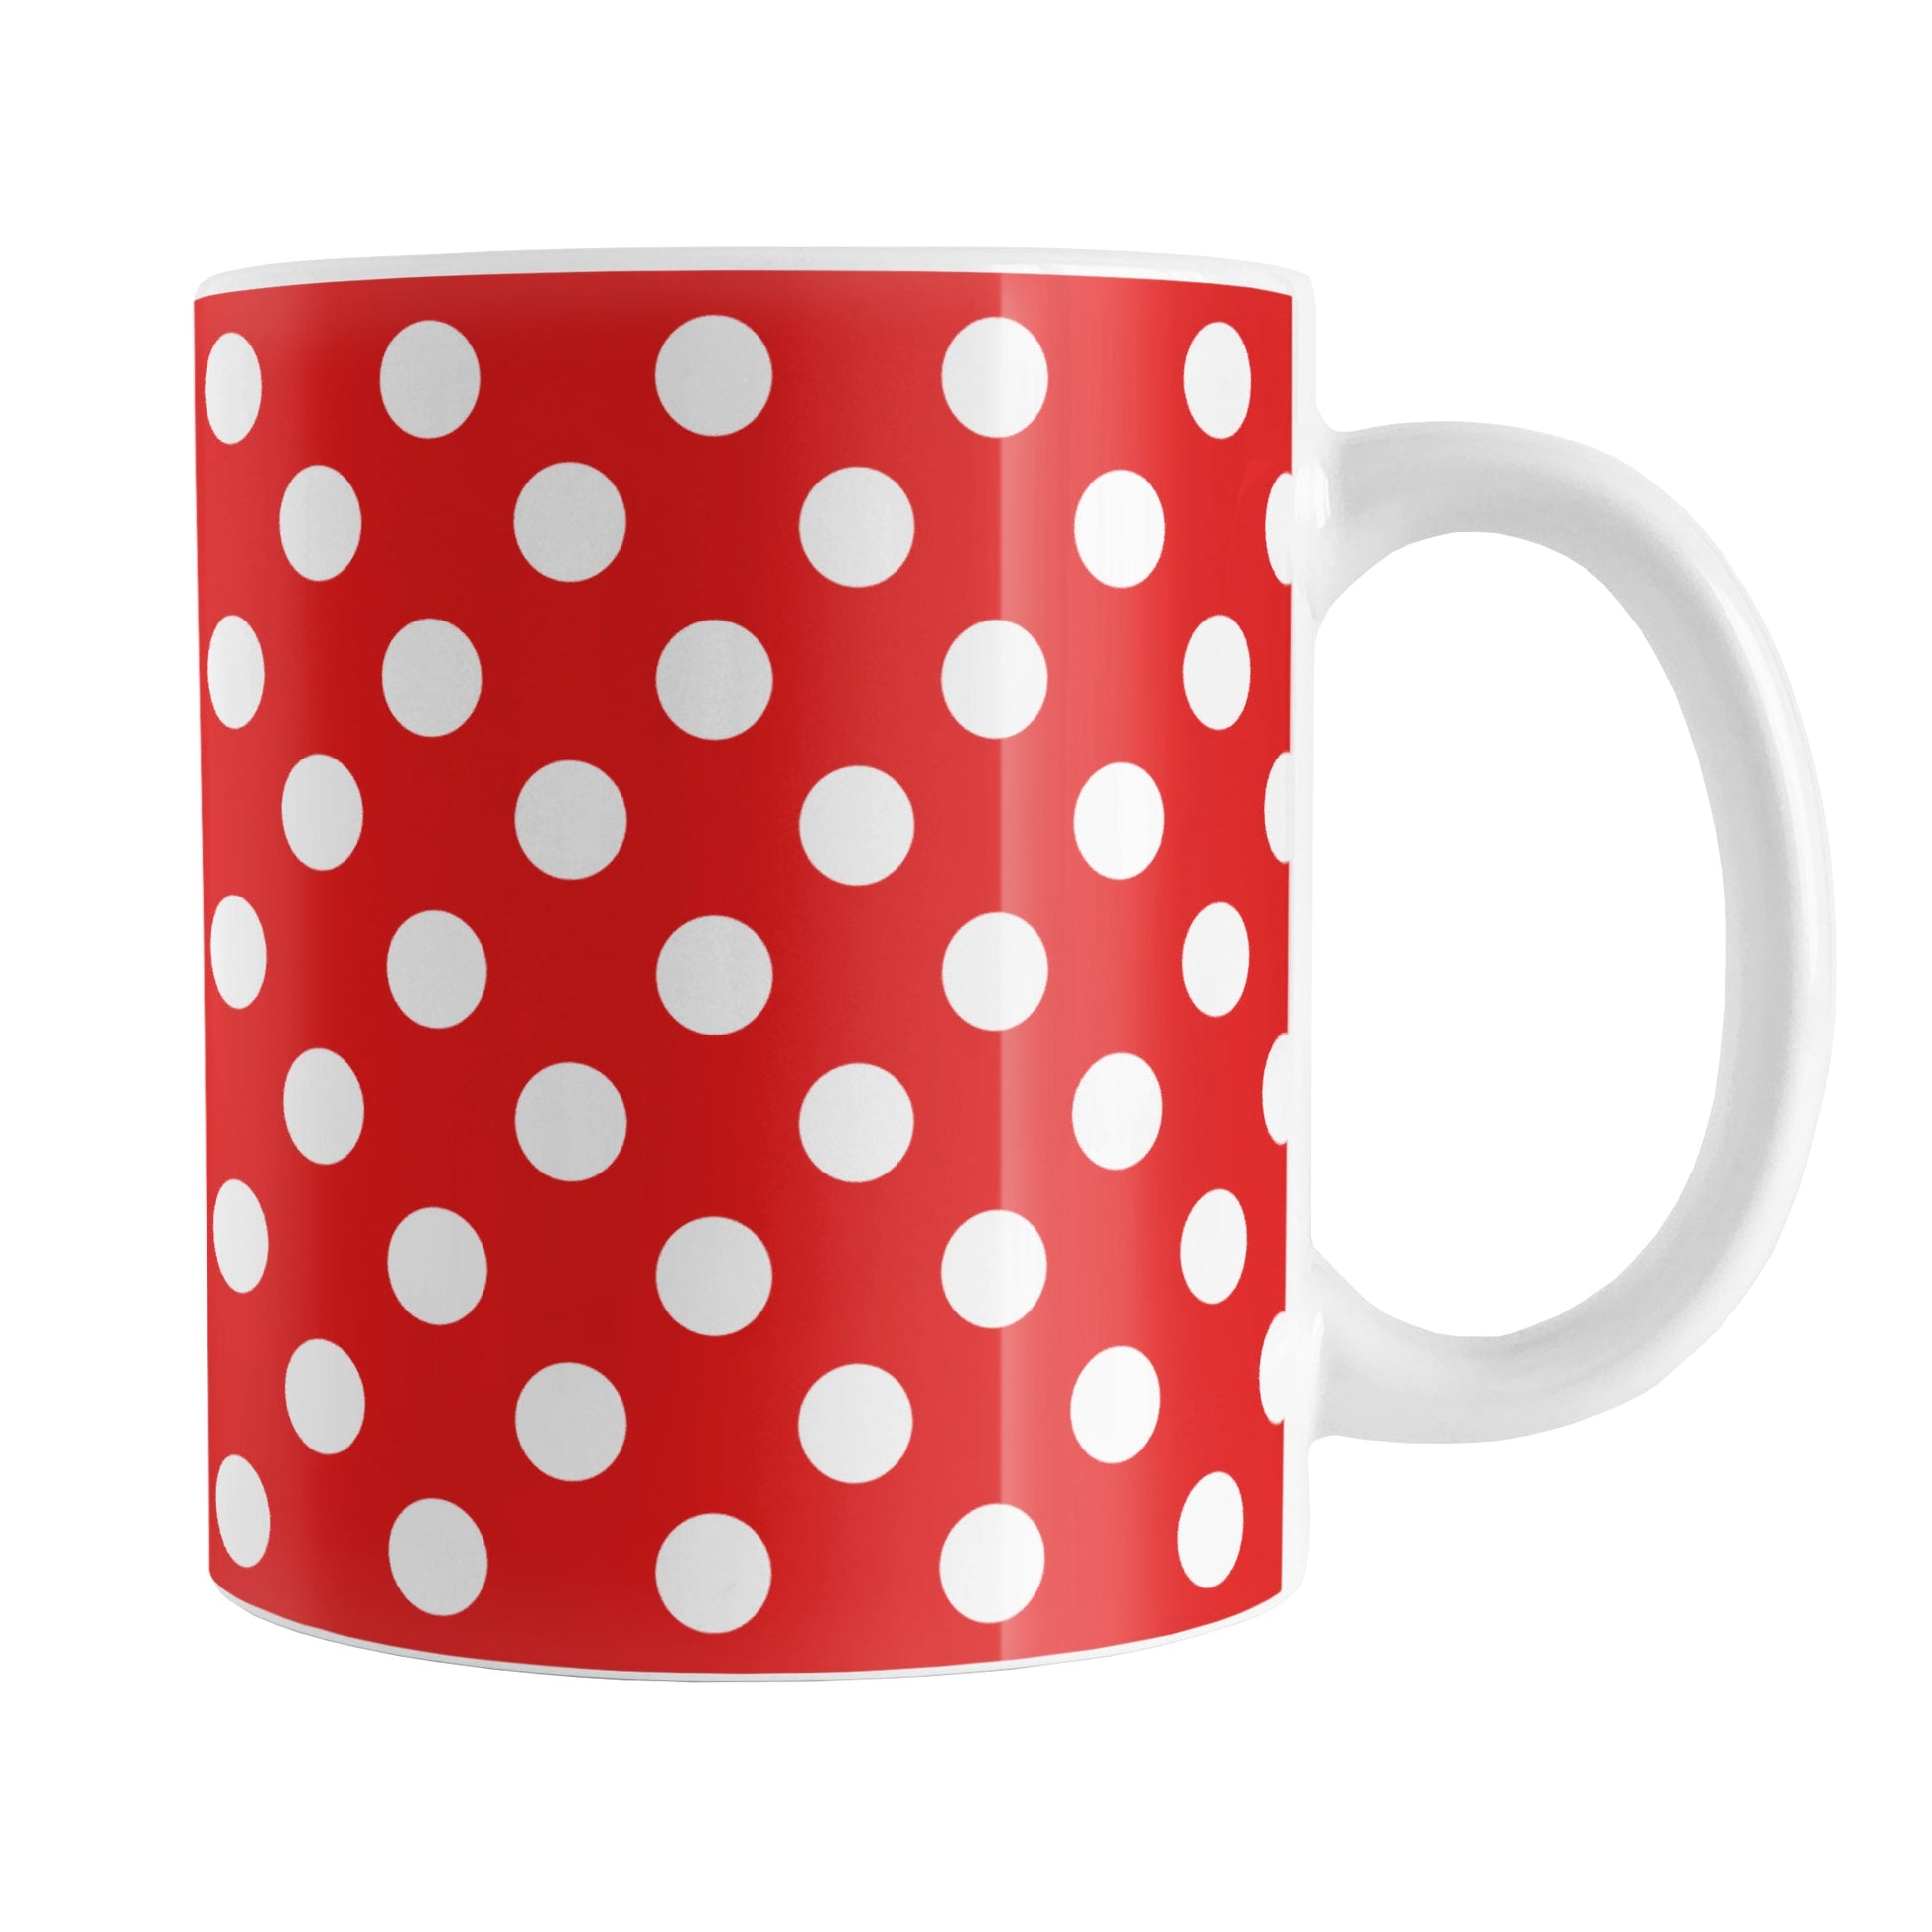 Red Polka Dot Mug (11oz) at Amy's Coffee Mugs